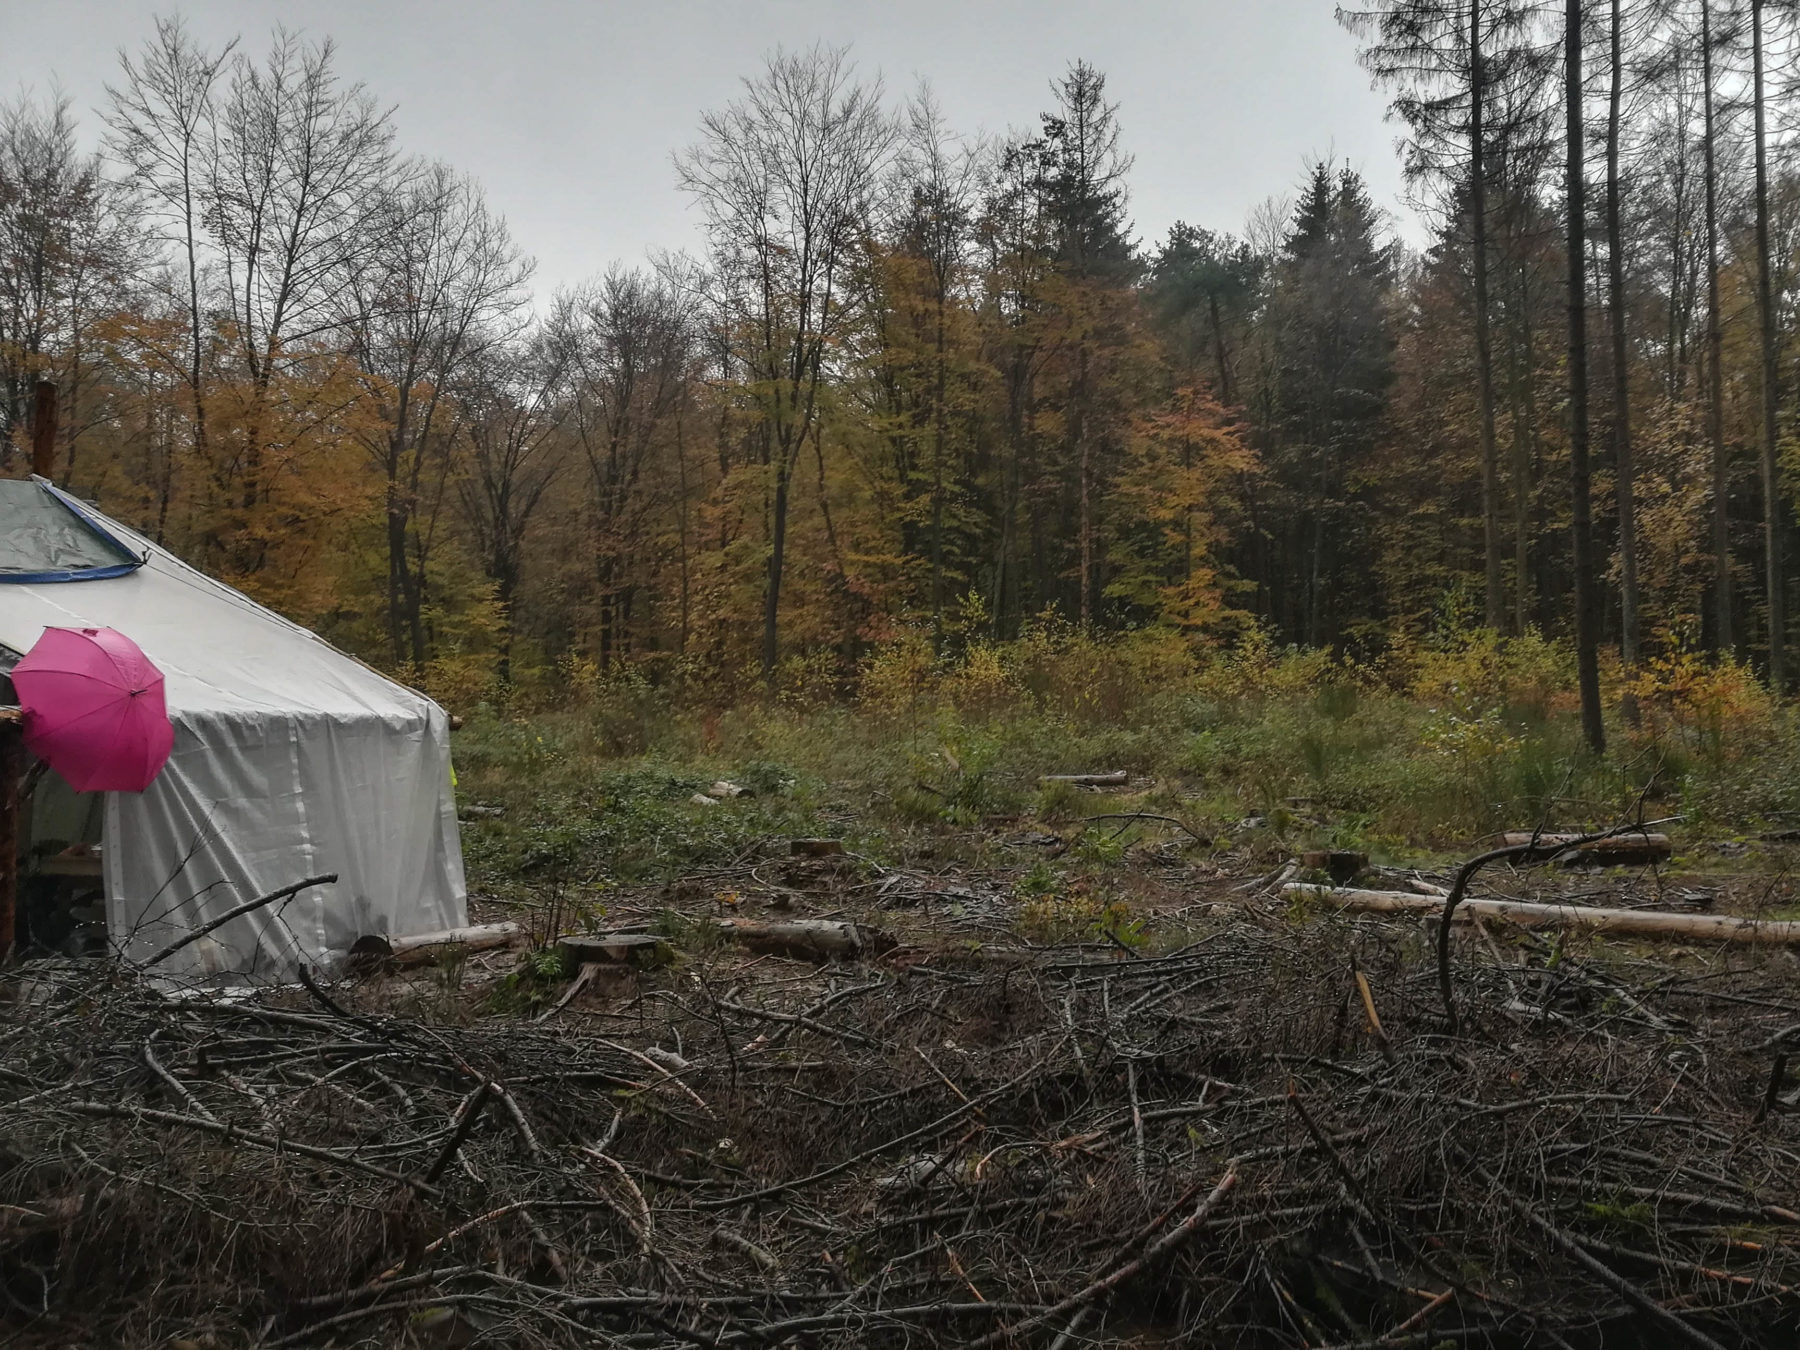 Tente blanche au milieu de la nature sous la grisaille du mois de novembre